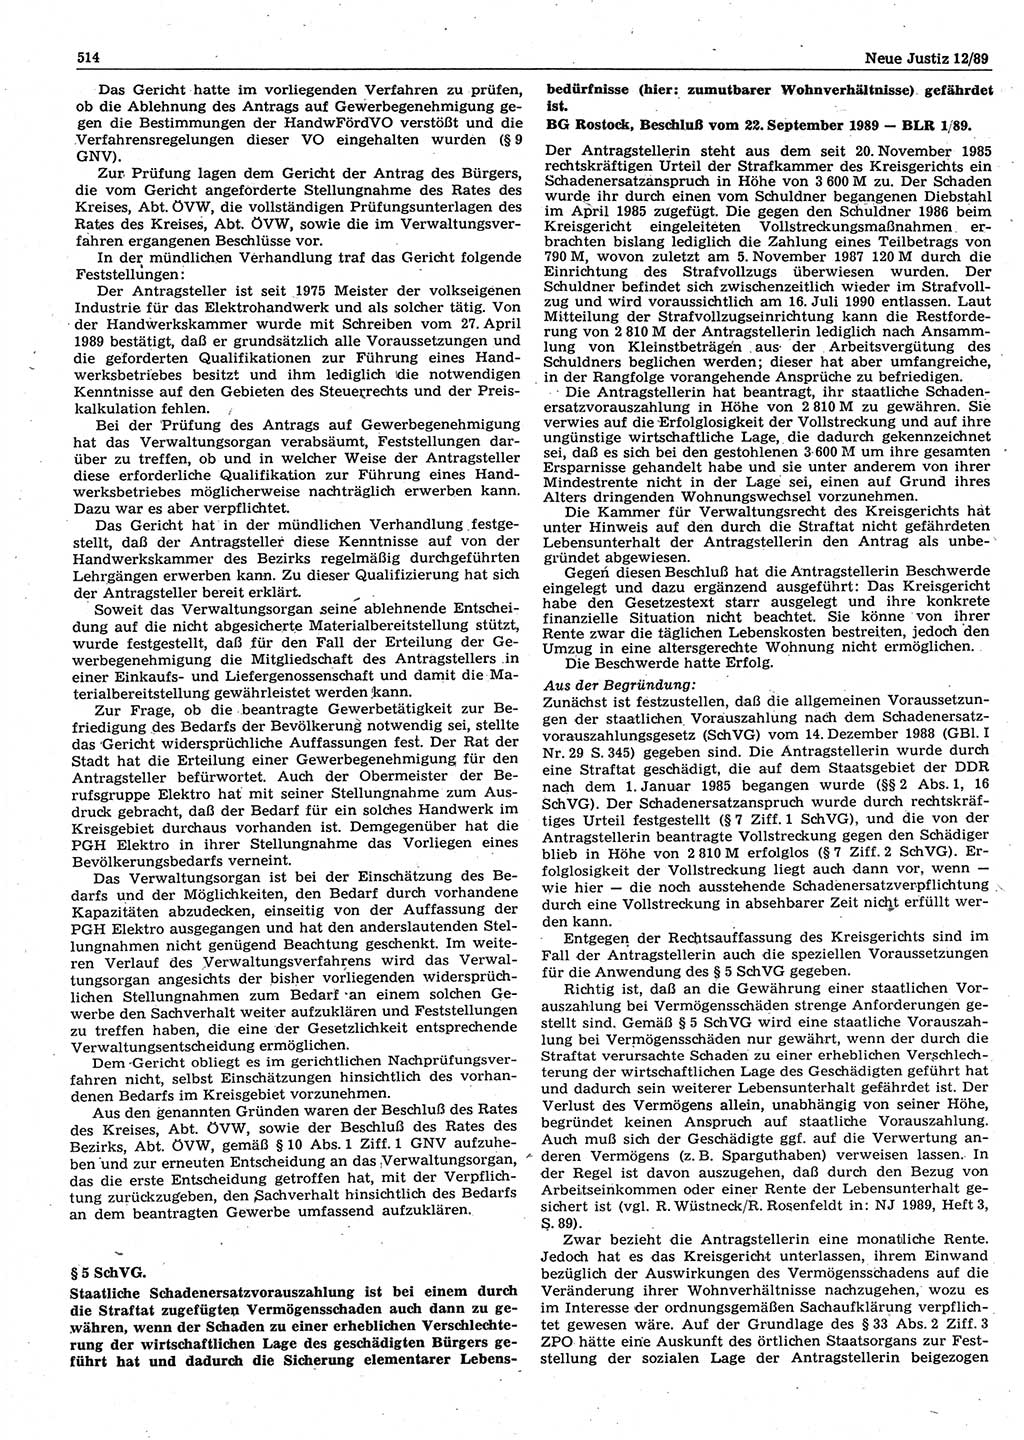 Neue Justiz (NJ), Zeitschrift für sozialistisches Recht und Gesetzlichkeit [Deutsche Demokratische Republik (DDR)], 43. Jahrgang 1989, Seite 514 (NJ DDR 1989, S. 514)